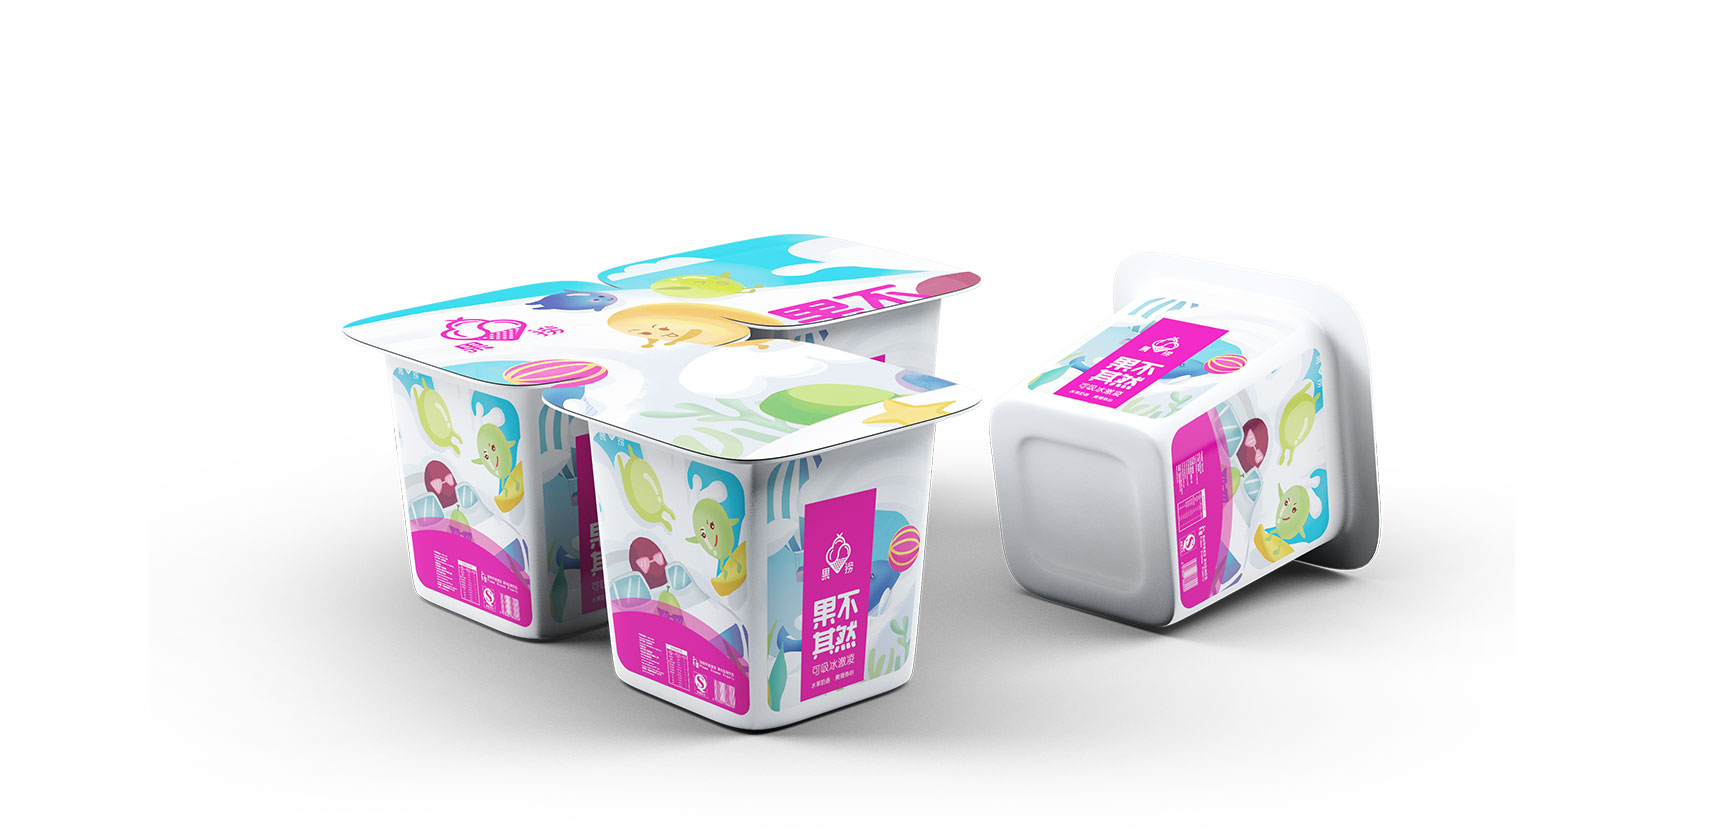 果捞品牌产品包装盒设计5